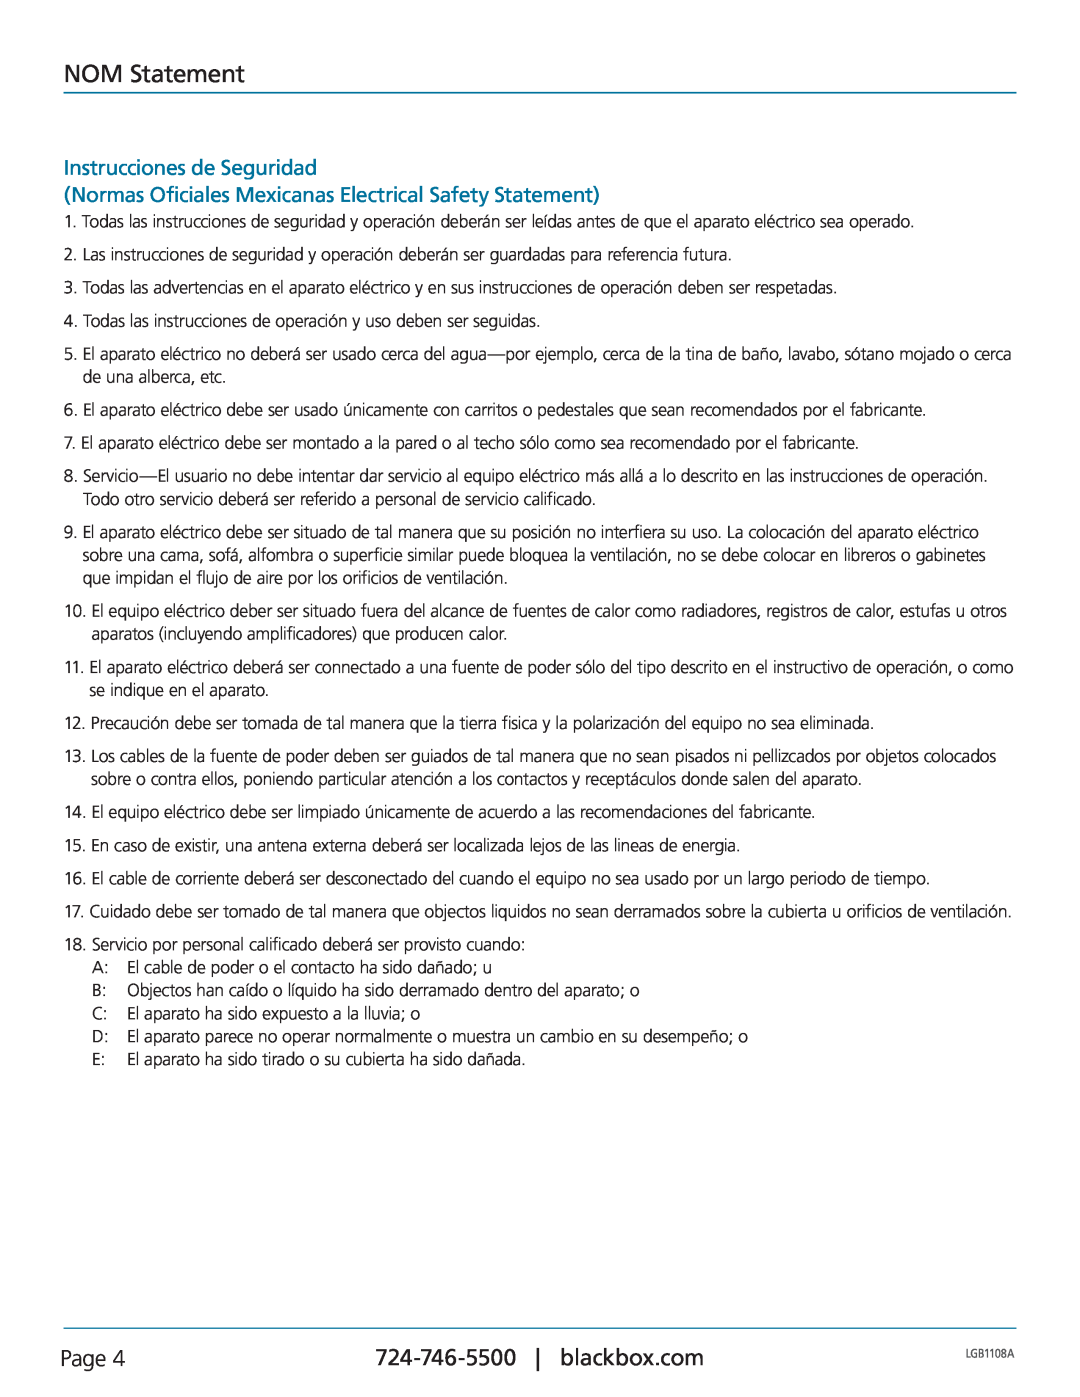 Black Box LGB1126A NOM Statement, Instrucciones de Seguridad, Normas Oficiales Mexicanas Electrical Safety Statement, Page 